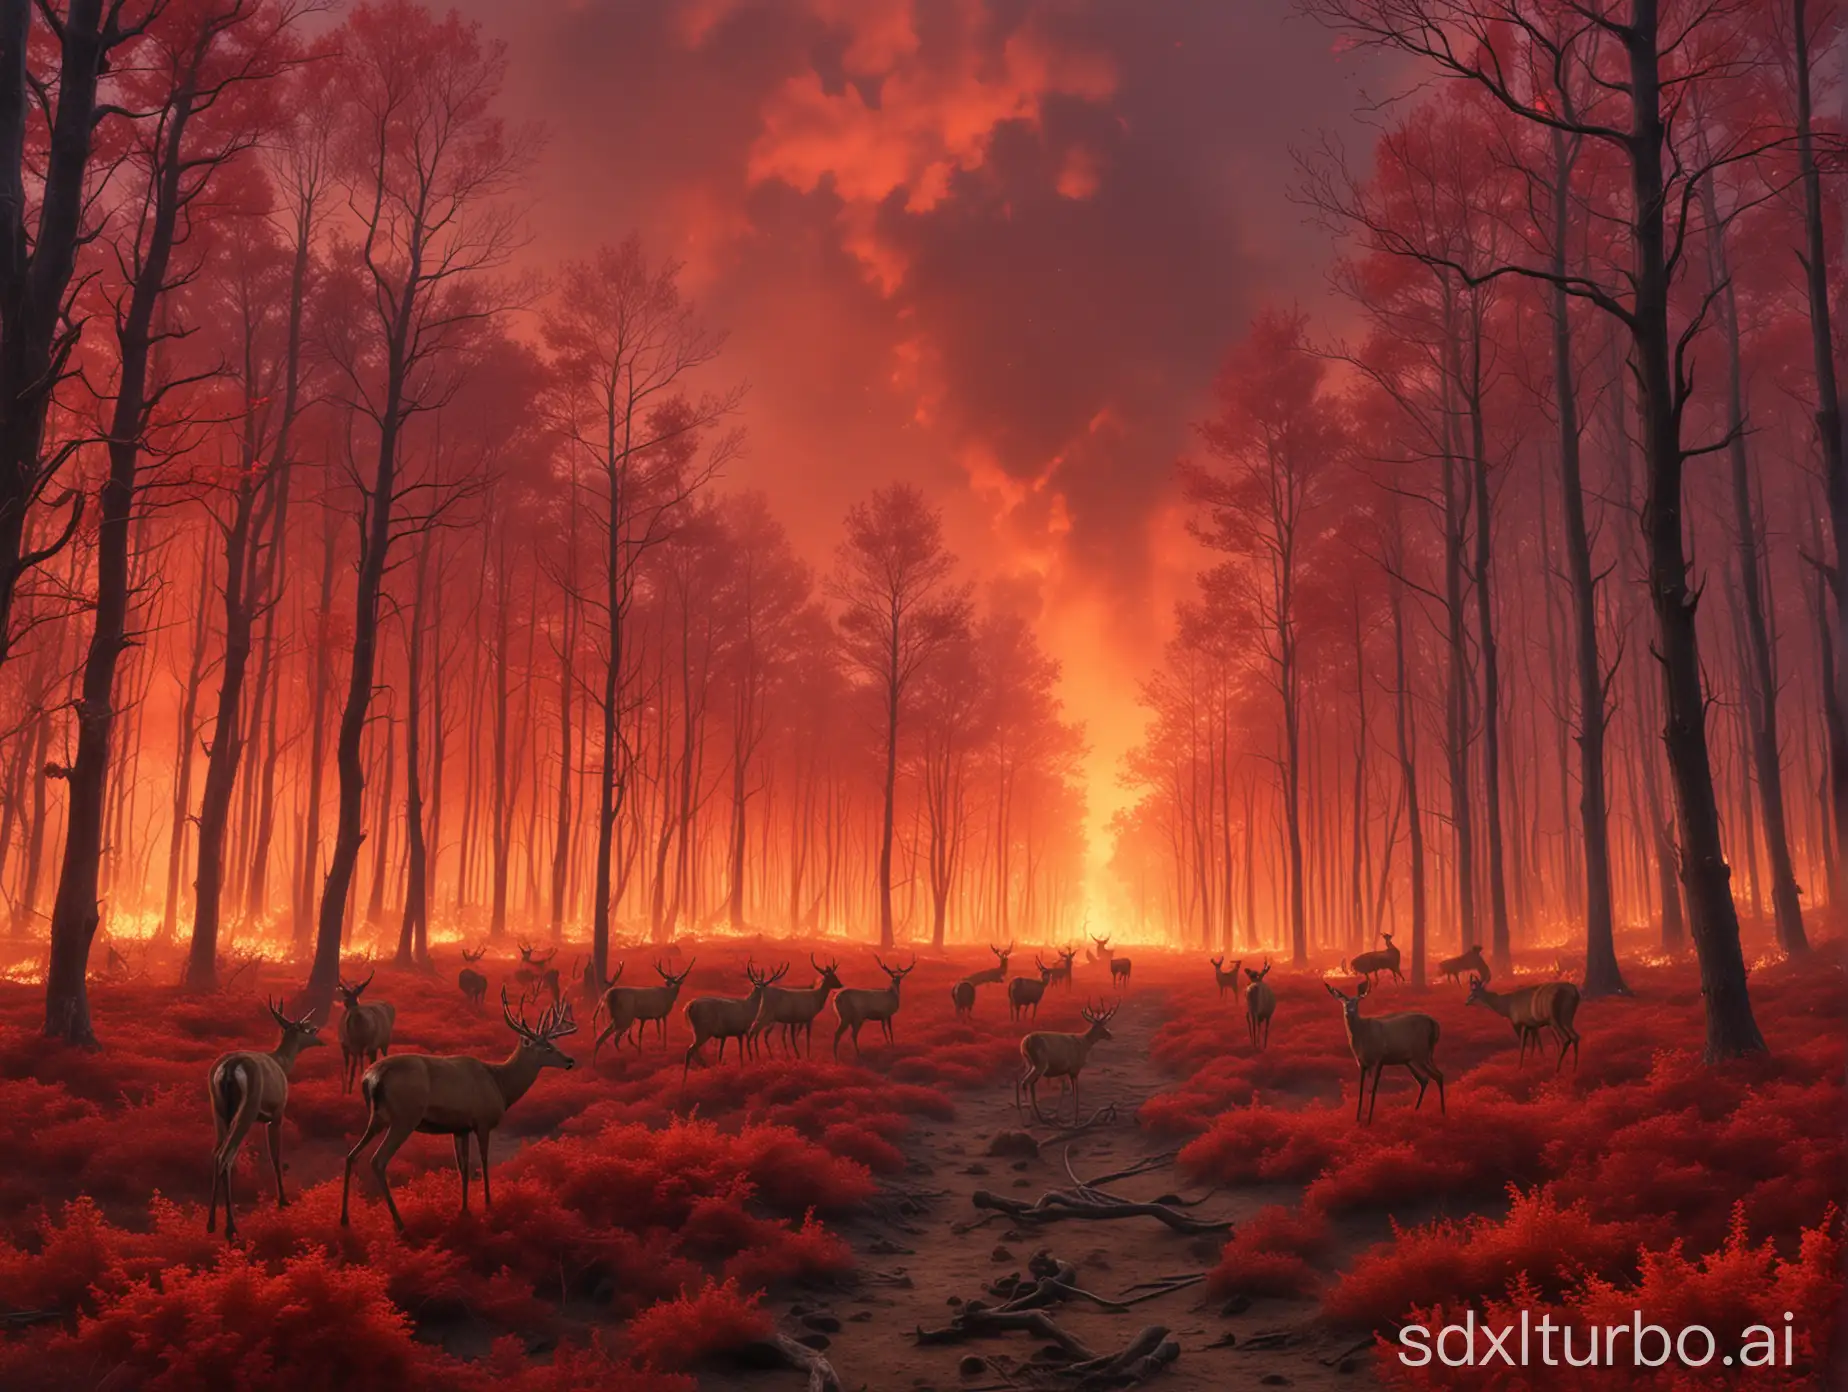 Crimson-Sky-Over-Fleeing-Deer-Wildfire-Scene-in-the-Forest